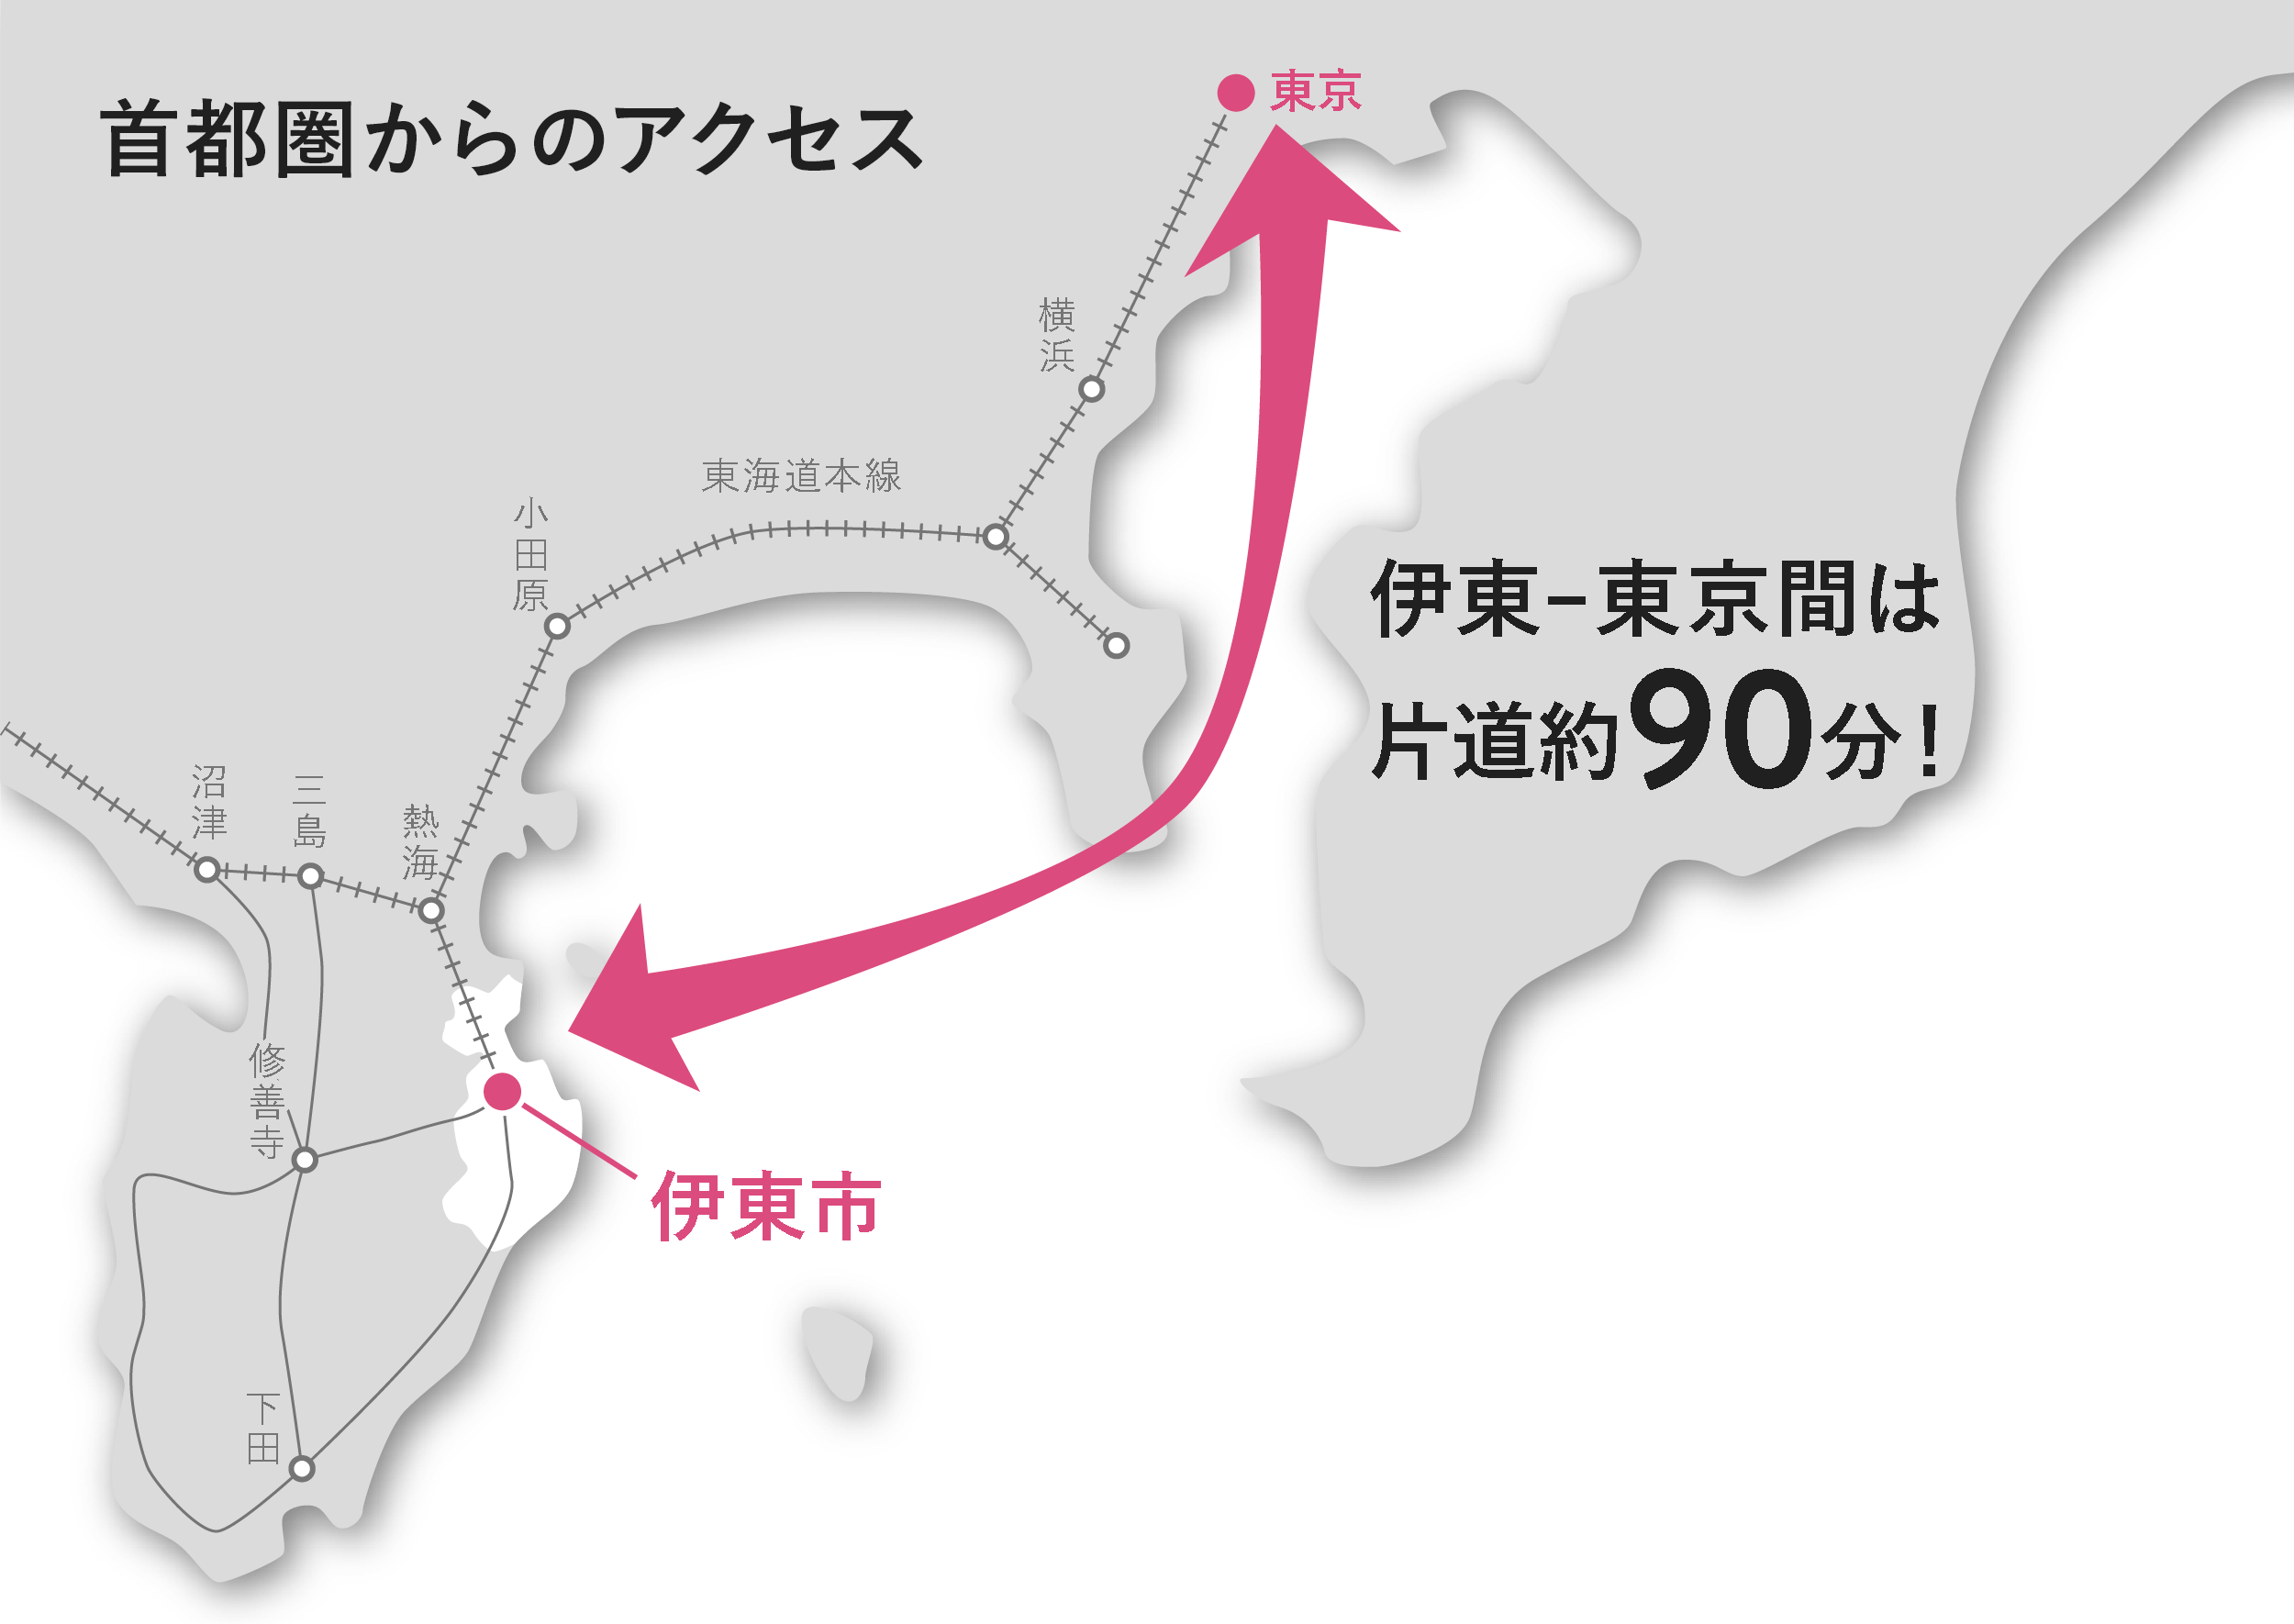 首都圏からのアクセス 伊東-東京間は片道約90分！